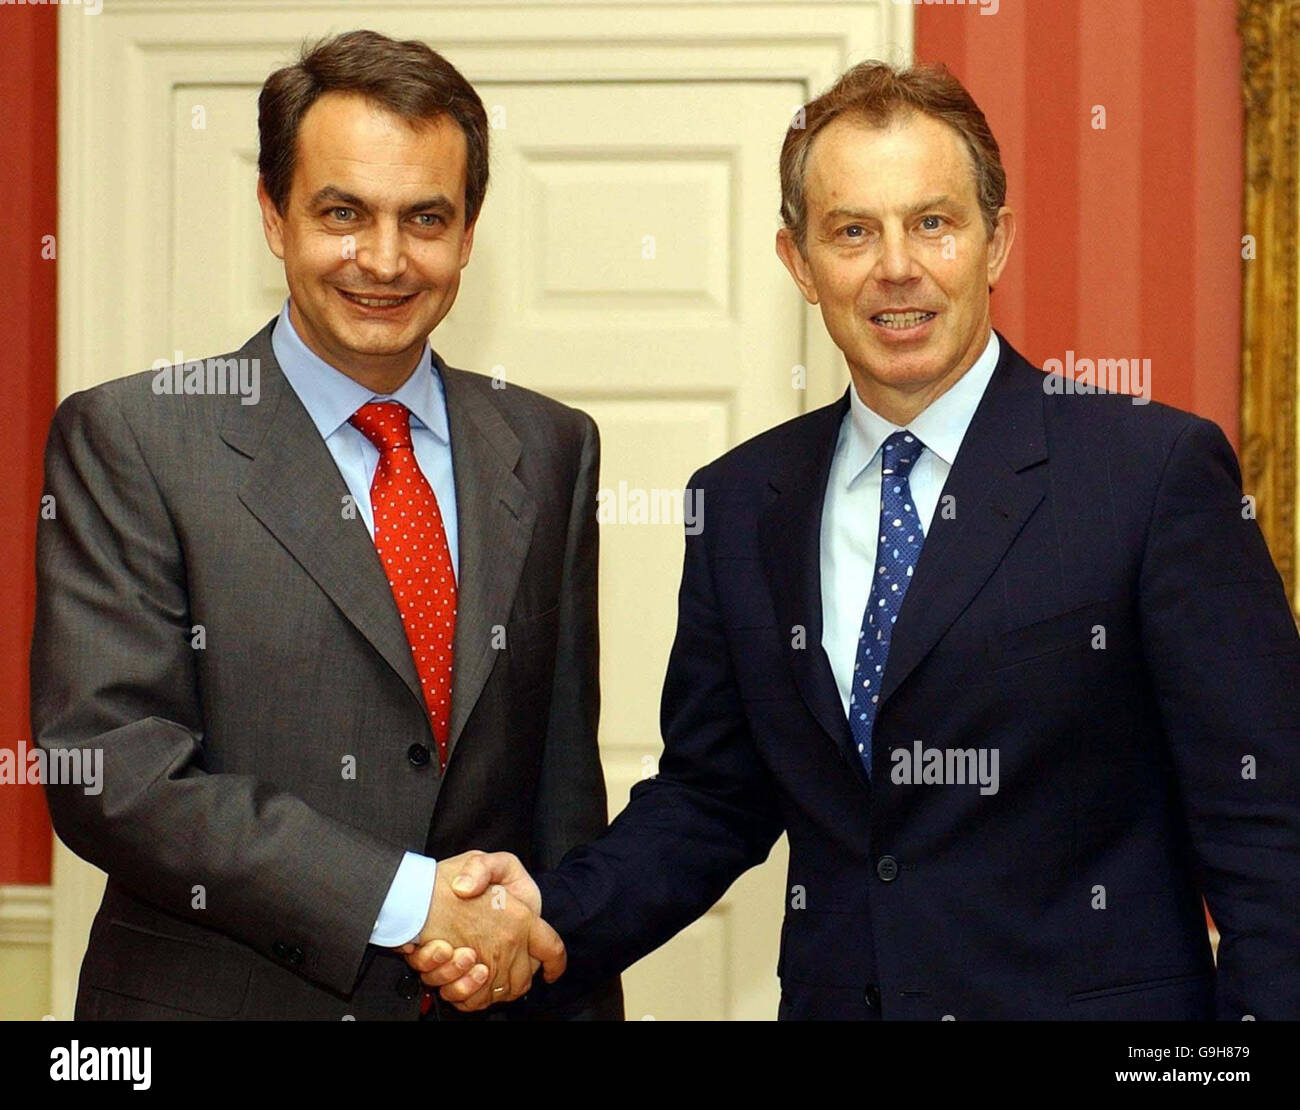 Archivo de la biblioteca de fecha 03/06/2004 del primer ministro británico Tony Blair se reunió con el primer ministro español José Luis Rodríguez Zapatero (derecha) en Downing Street. Foto de stock